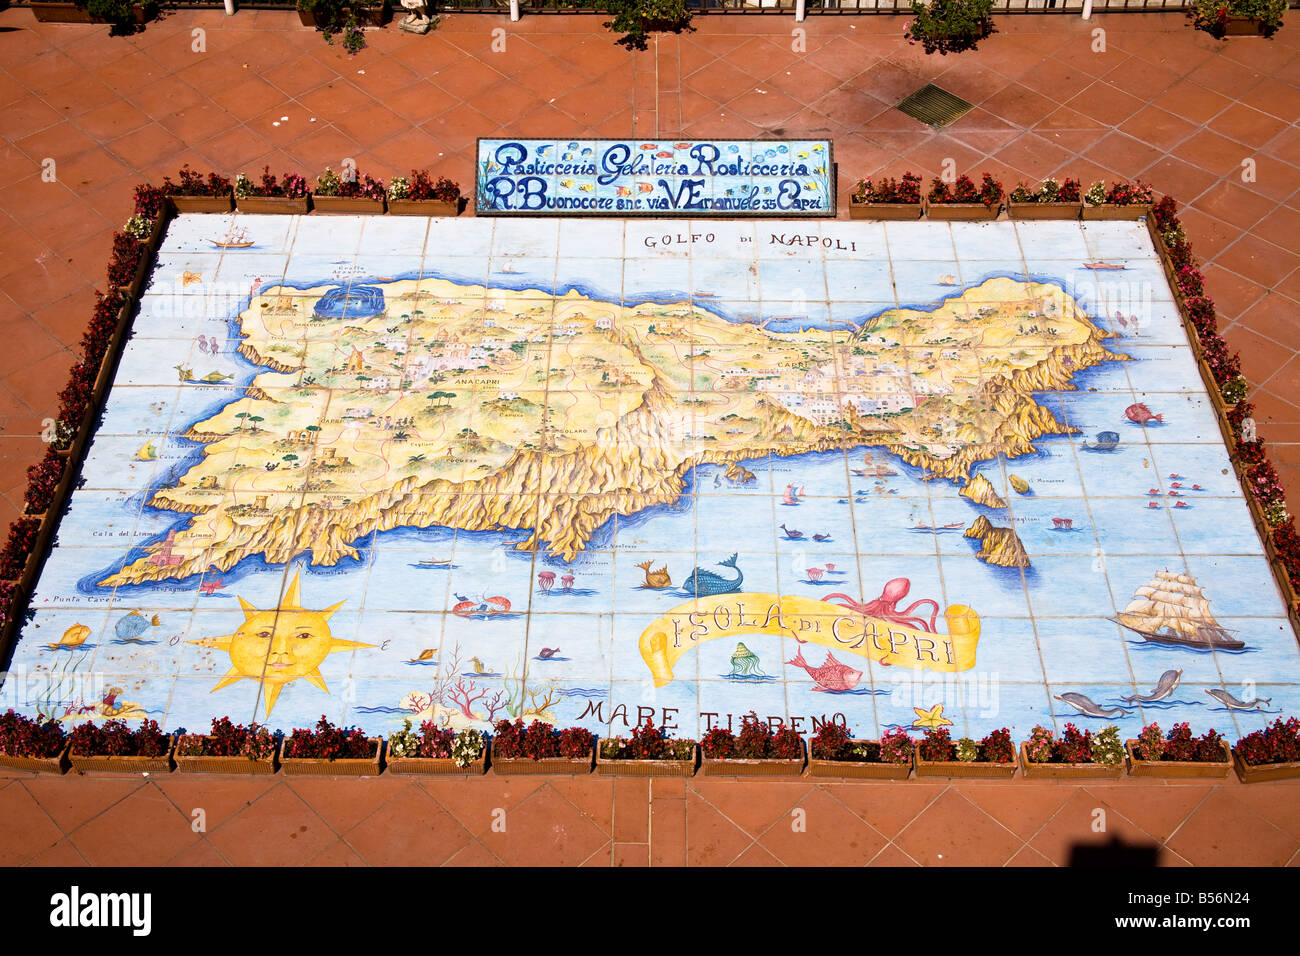 Map of Capri made from ceramic tiles, on a balcony, Capri, Italy Stock Photo